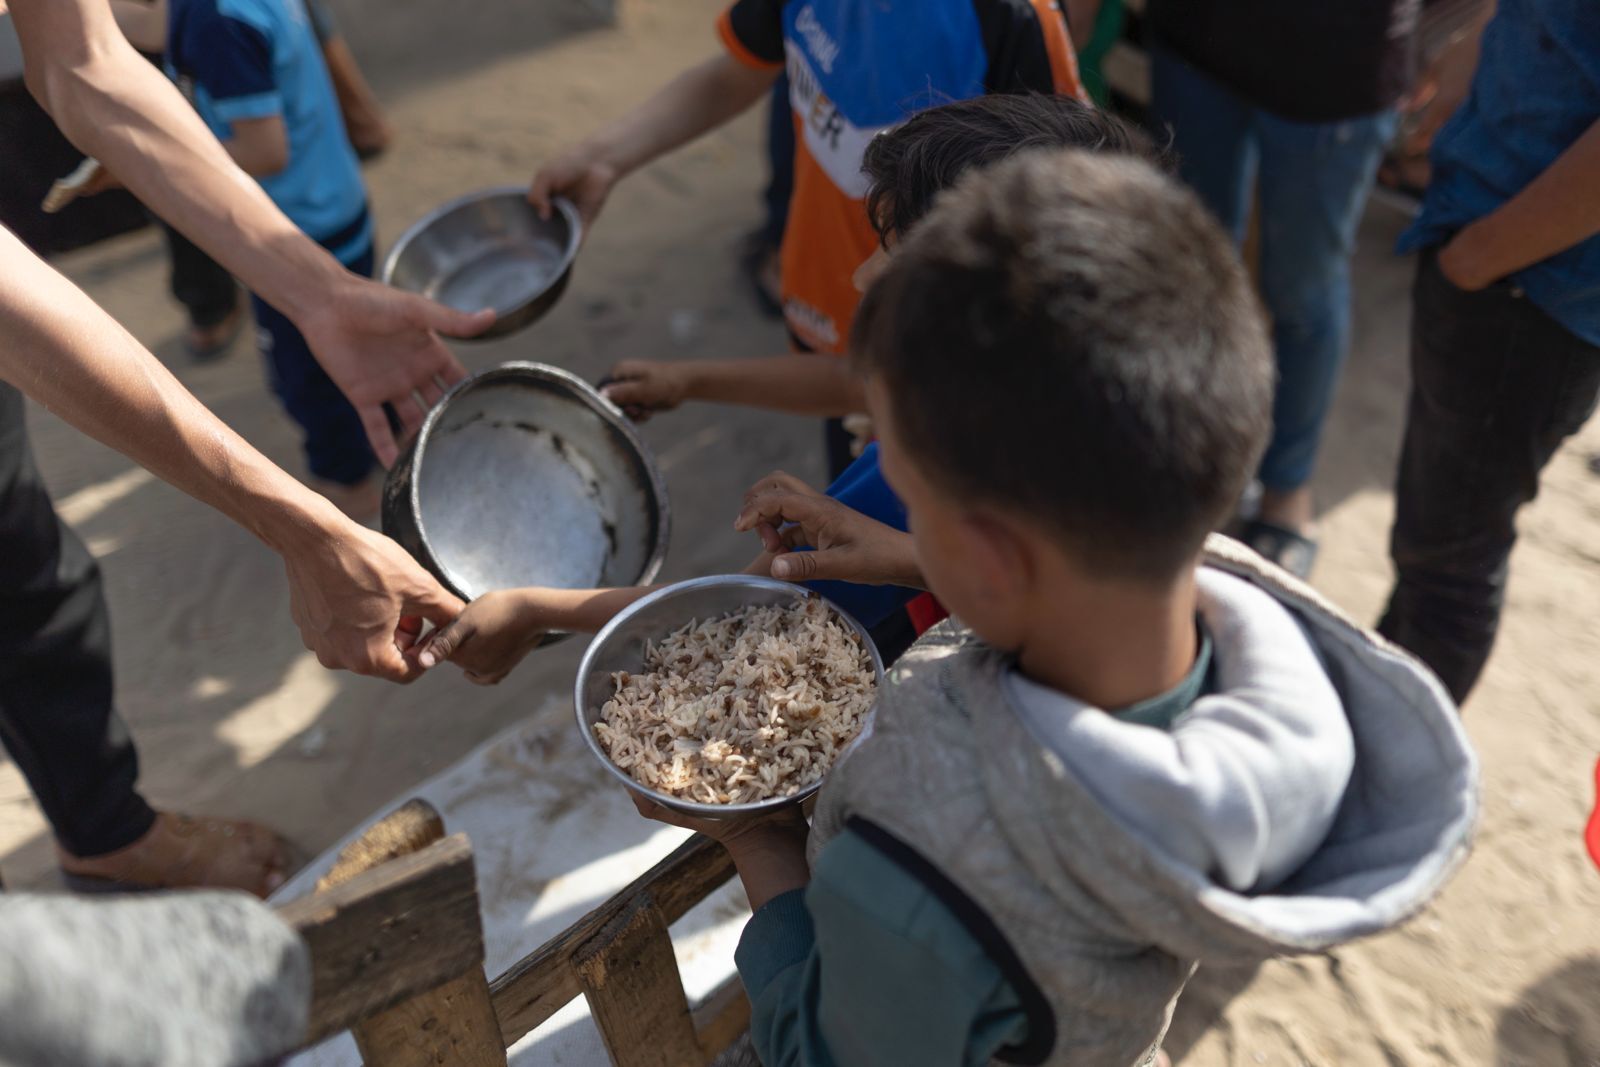 WCK 團隊動員到加薩各地向流離失所的巴勒斯坦人分發糧食。圖/取自World Central Kitchen @WCKitchen